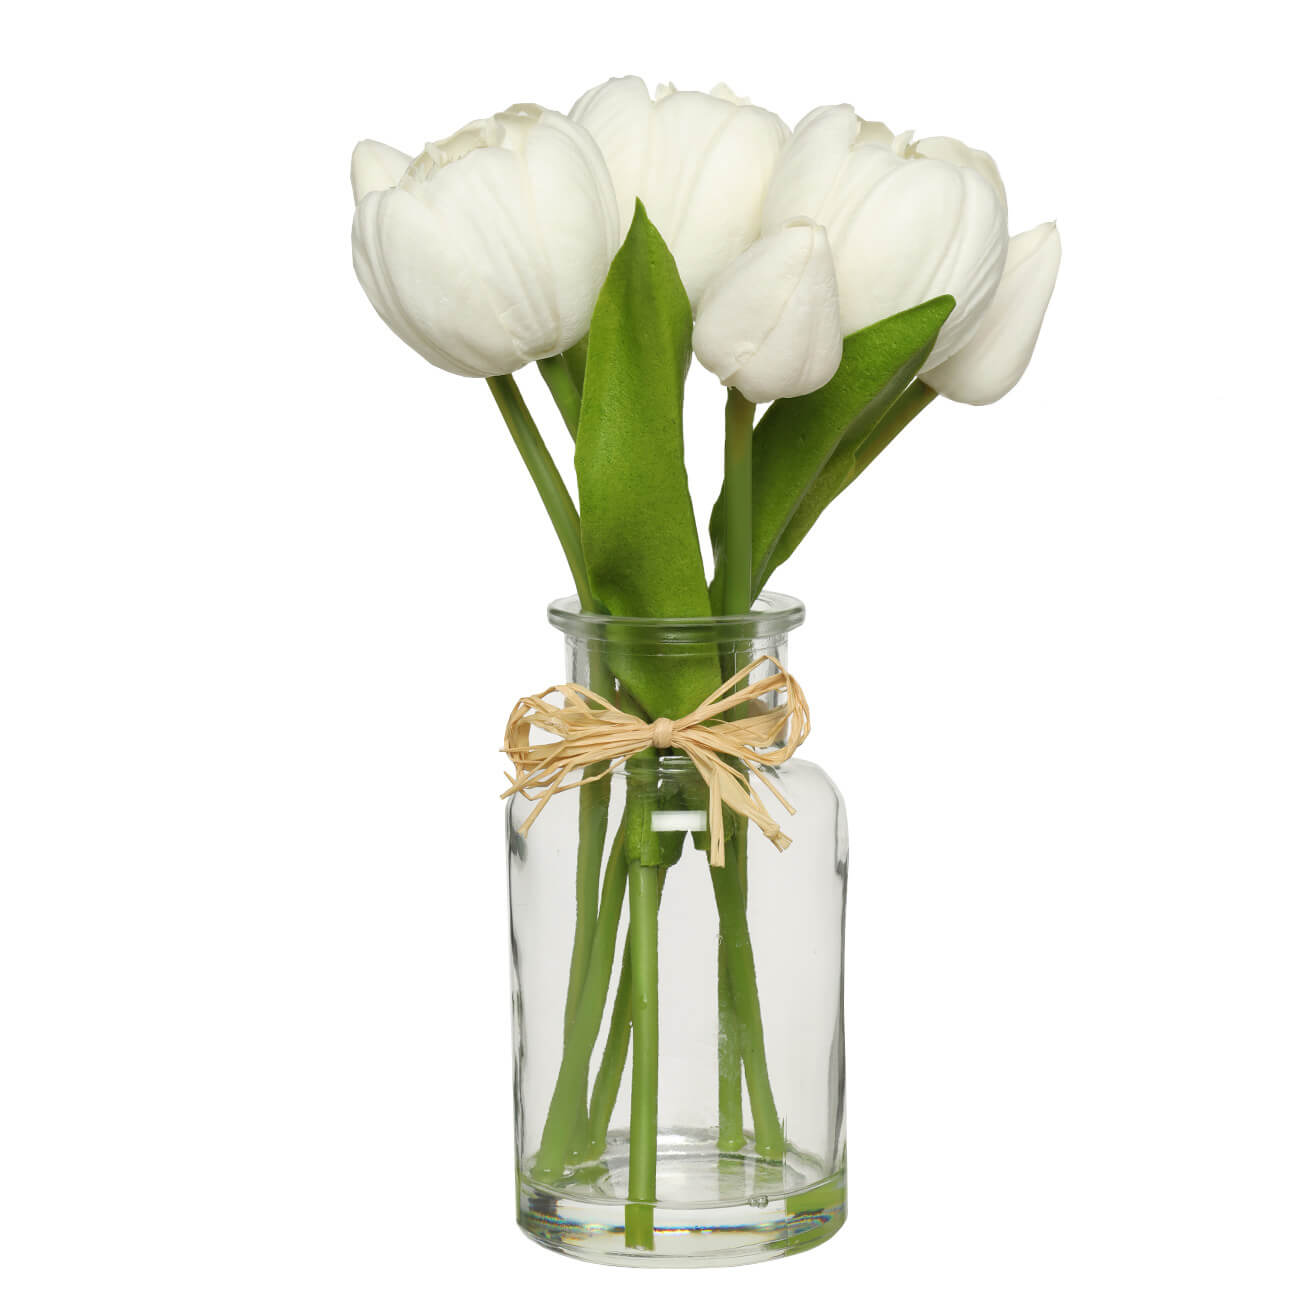 Растение искусственное, 21 см, в вазе, полиуретан/стекло, Белые тюльпаны, Flower garden - фото 1